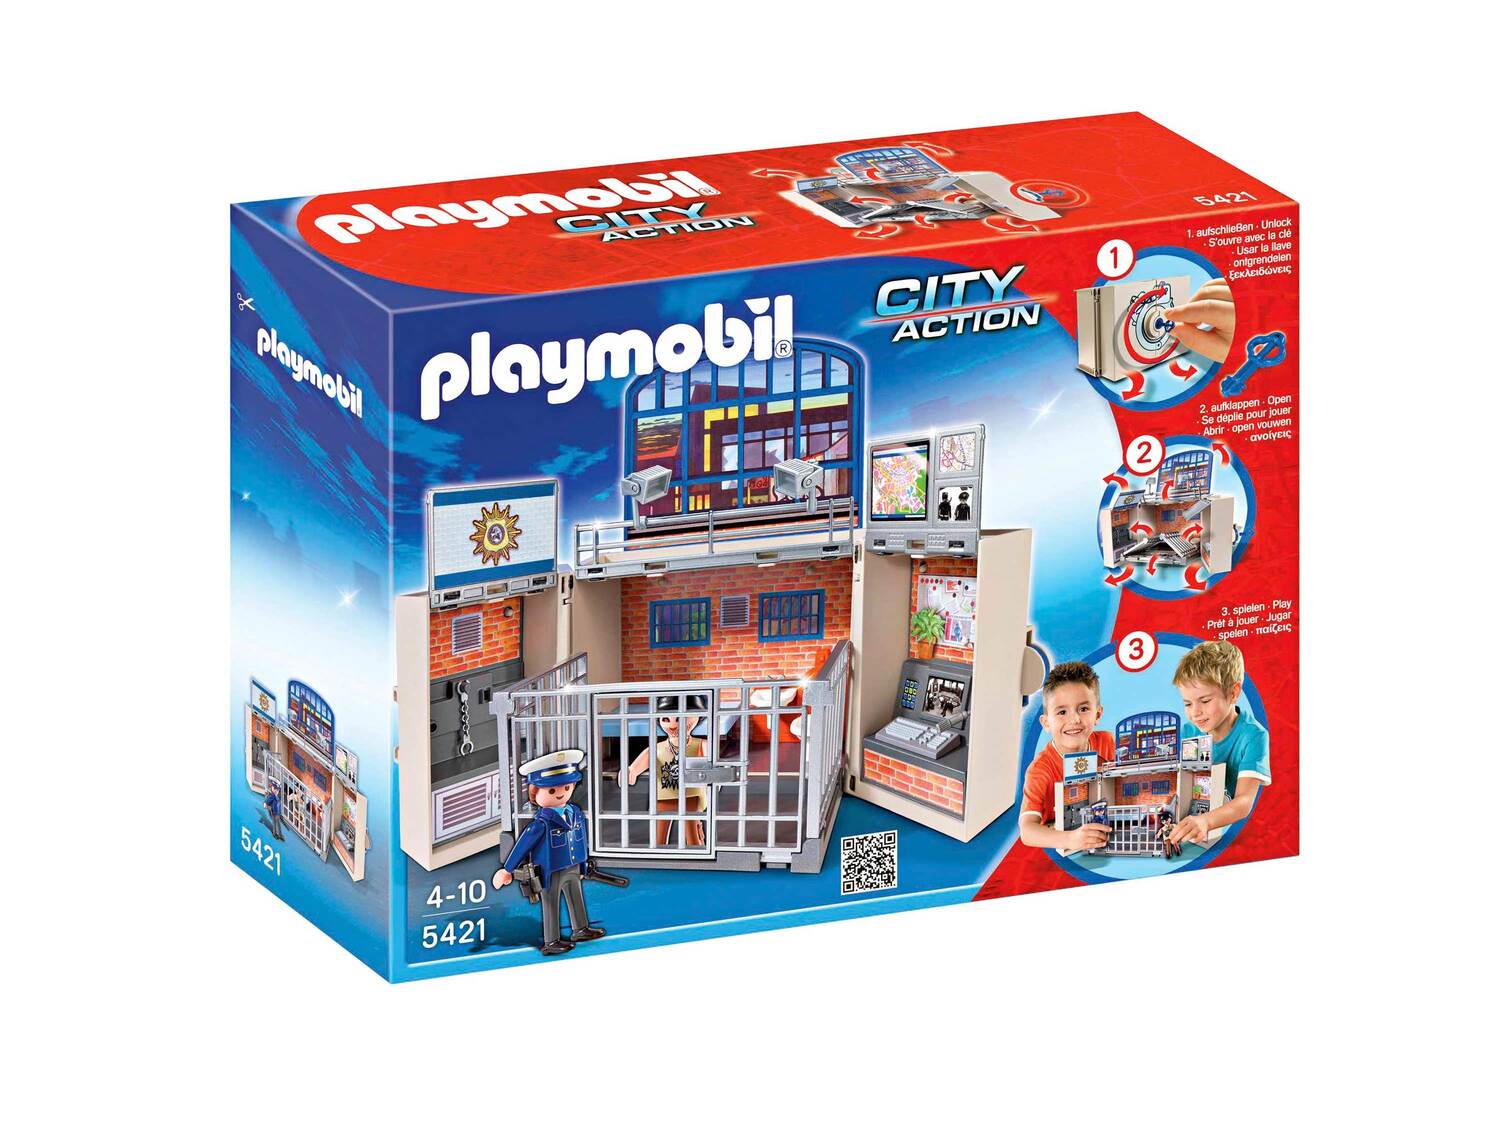 Zestaw klocków z figurkami Playmobil, cena 79,90 PLN  

Opis

- 4+